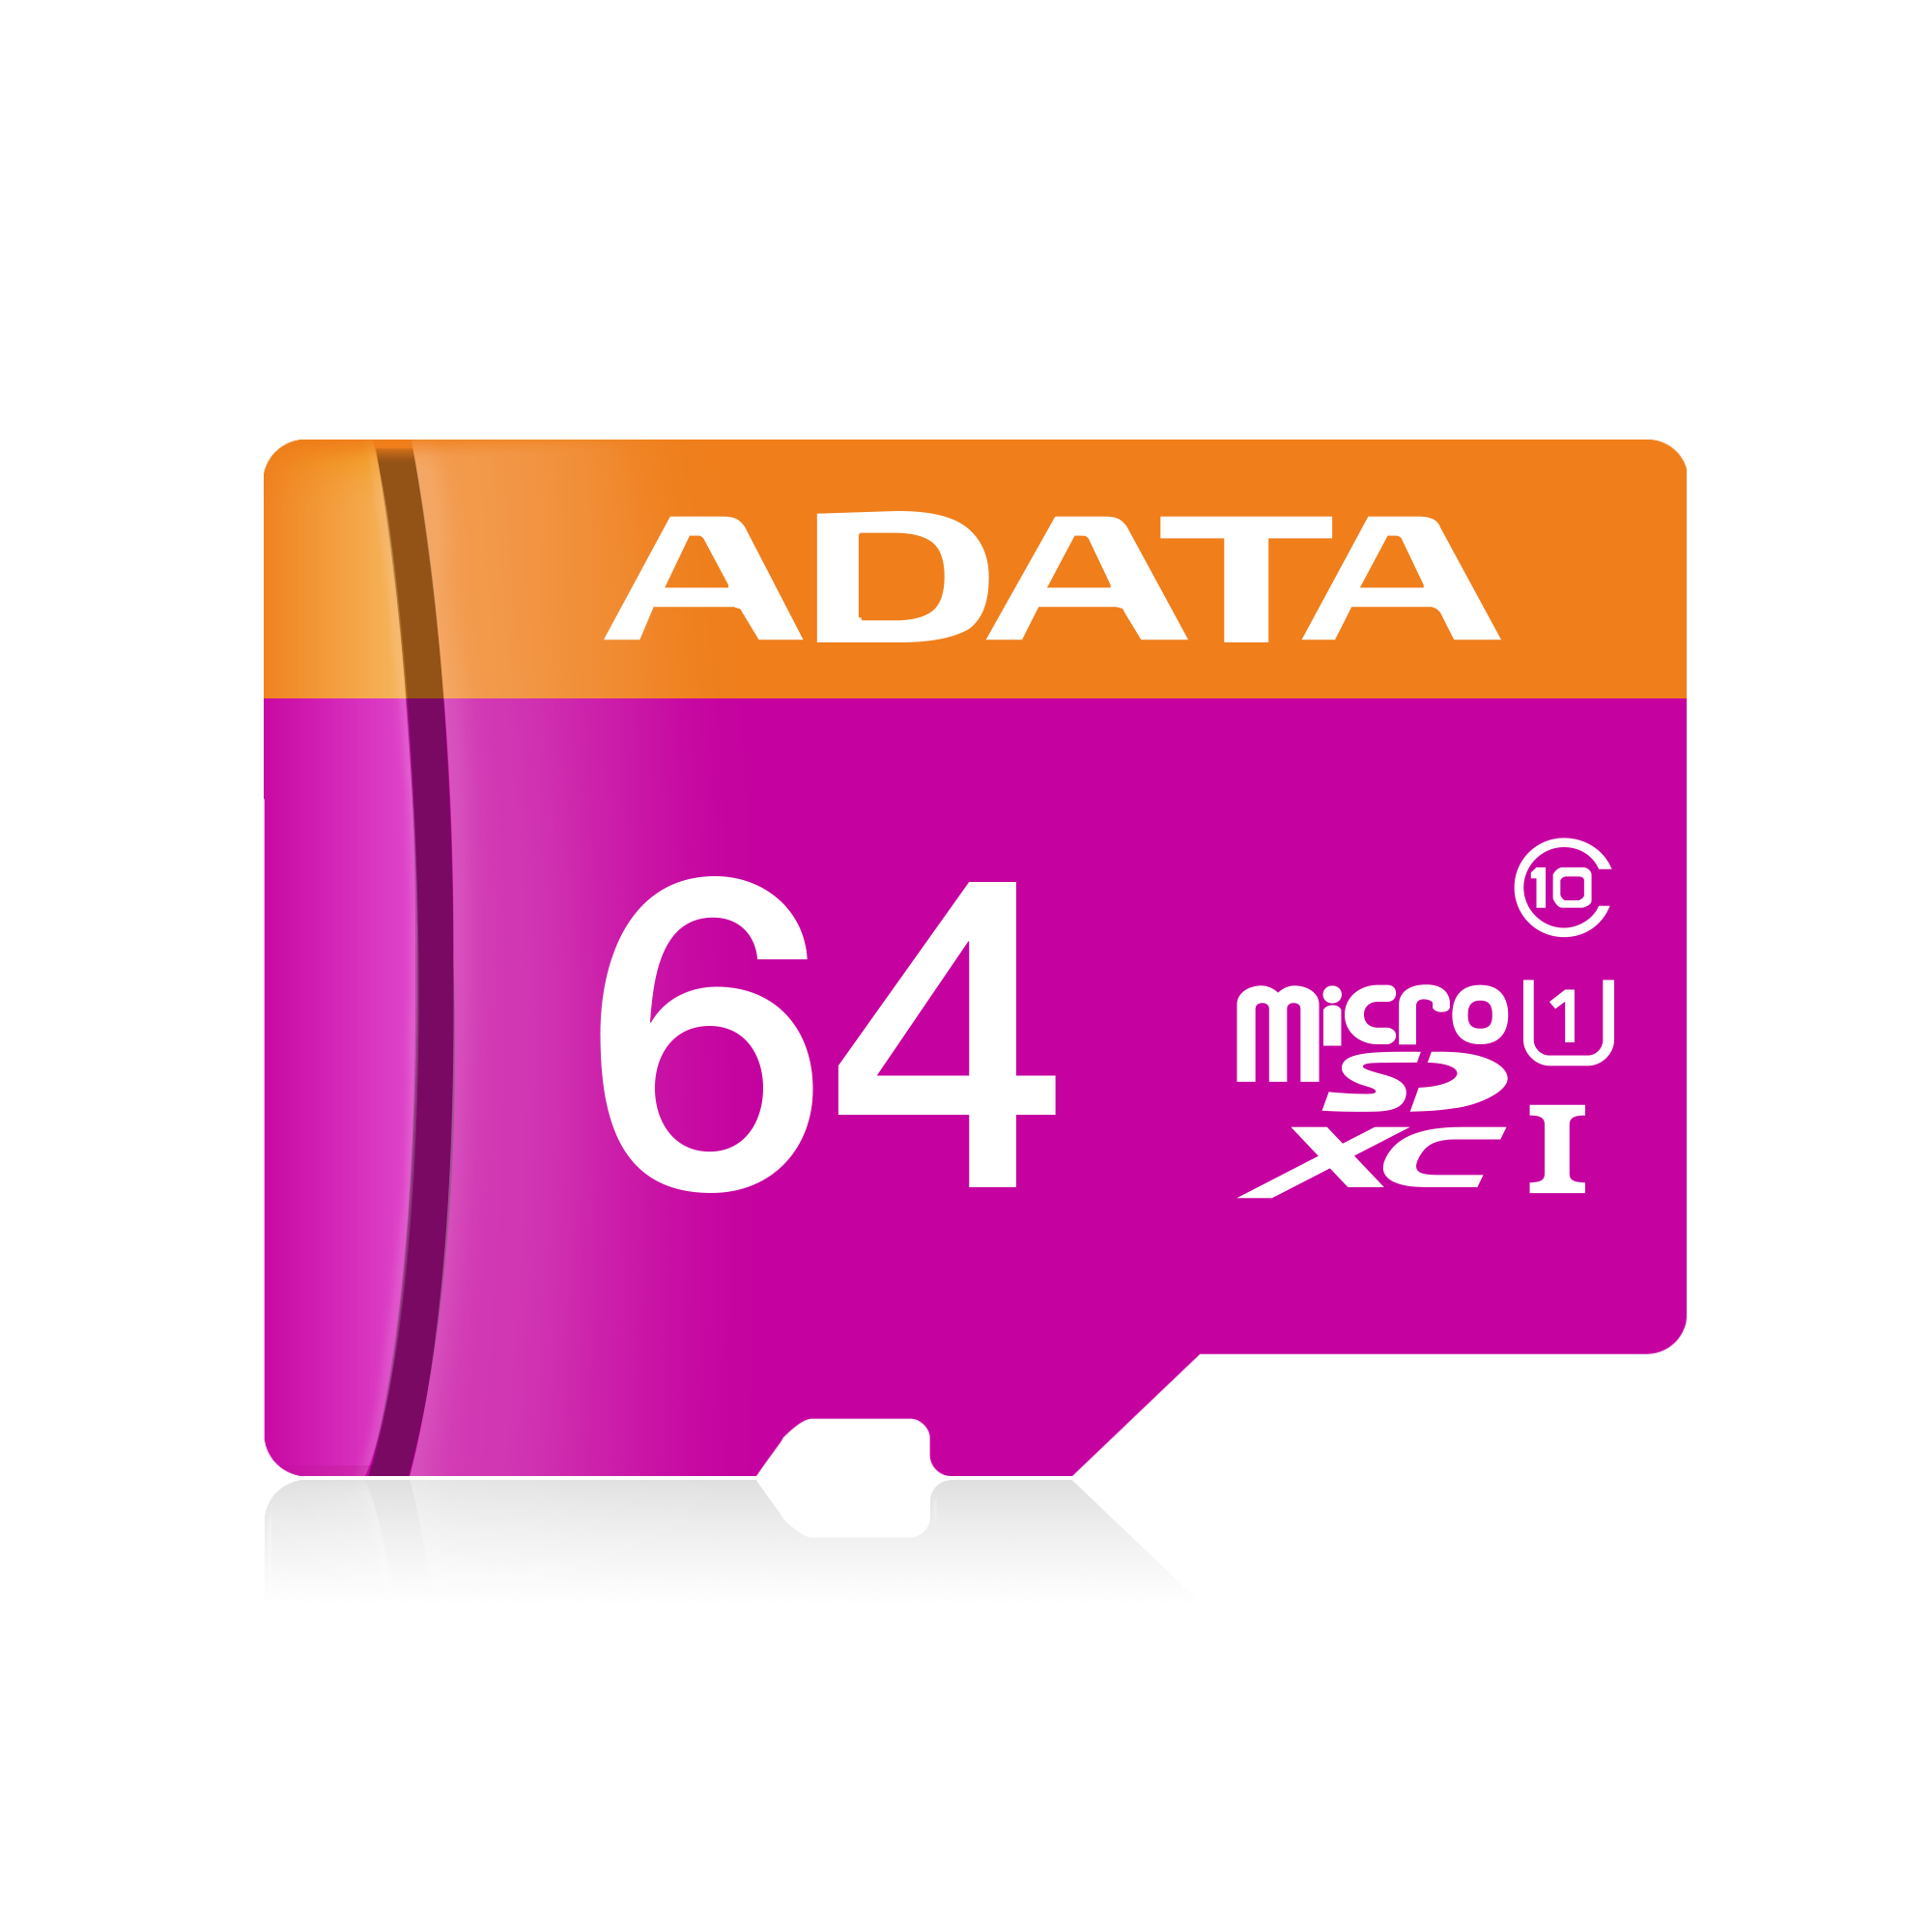 Memoria micro SD 32GB Adata